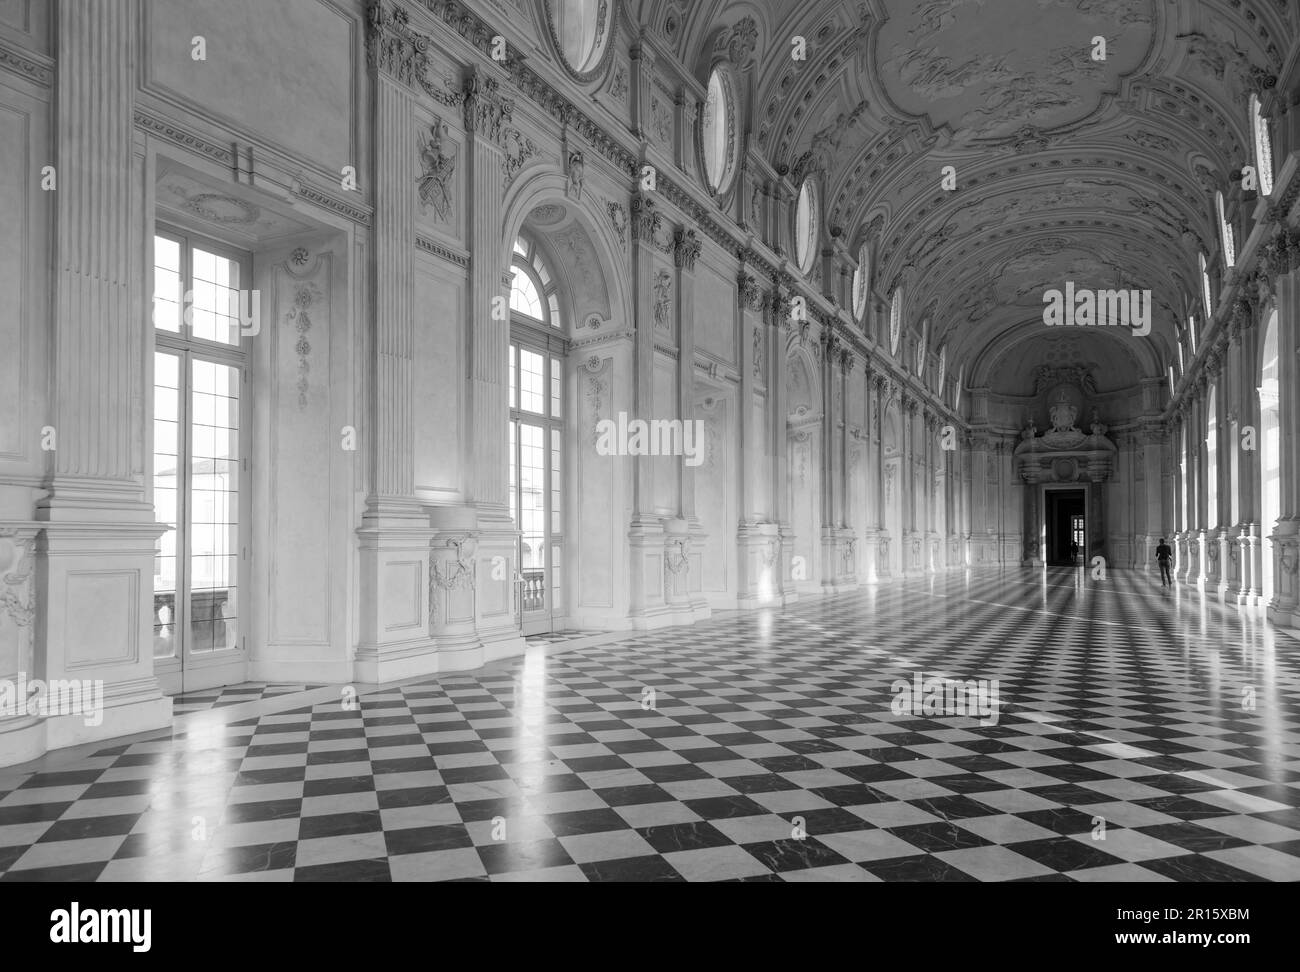 Dettaglio della Galleria di Diana a Venaria, Italia. Luxury Palazzo reale interno Foto Stock